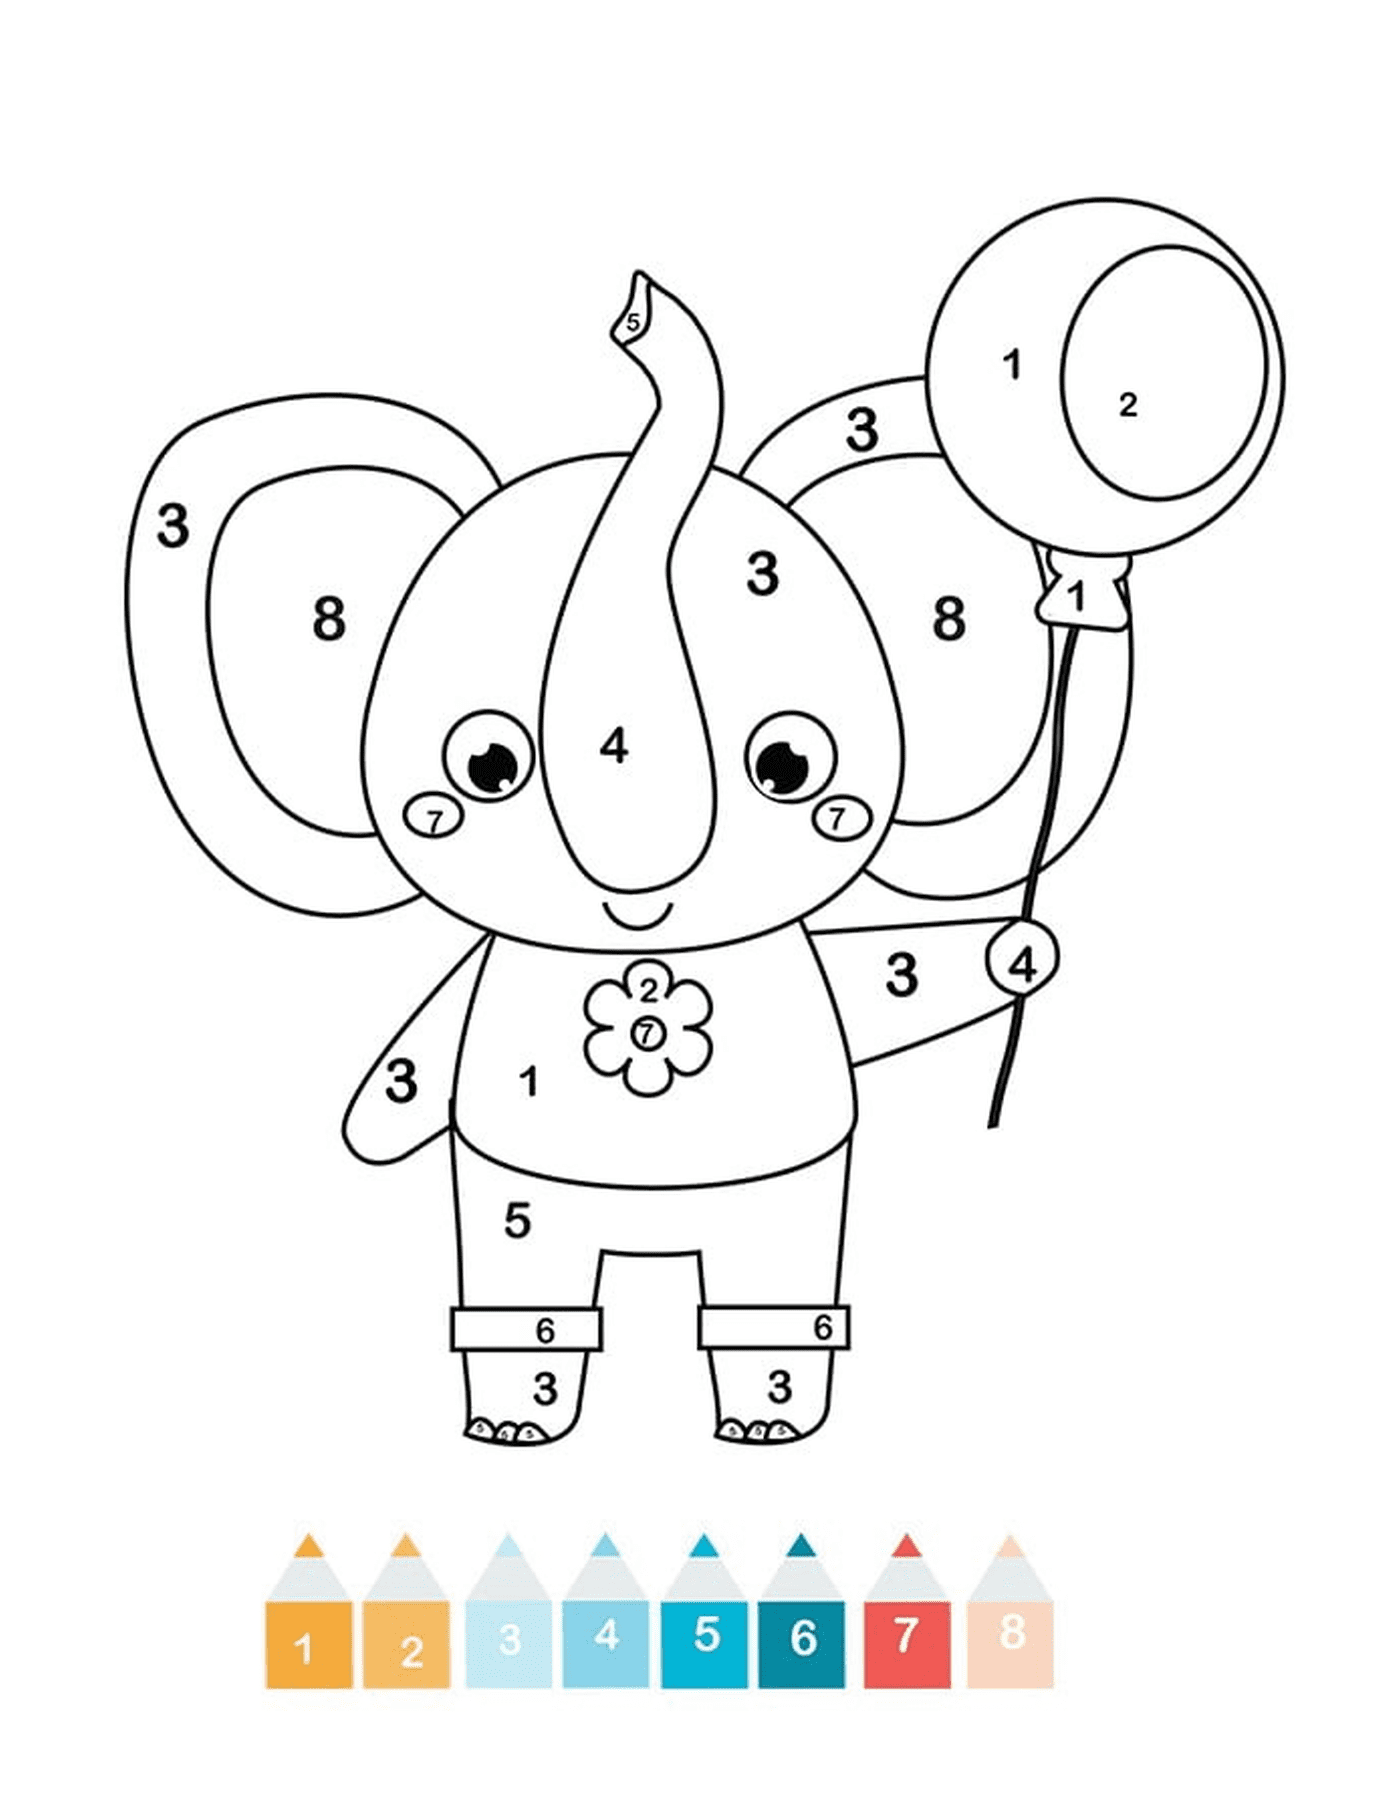  EC1 um elefante mágico 